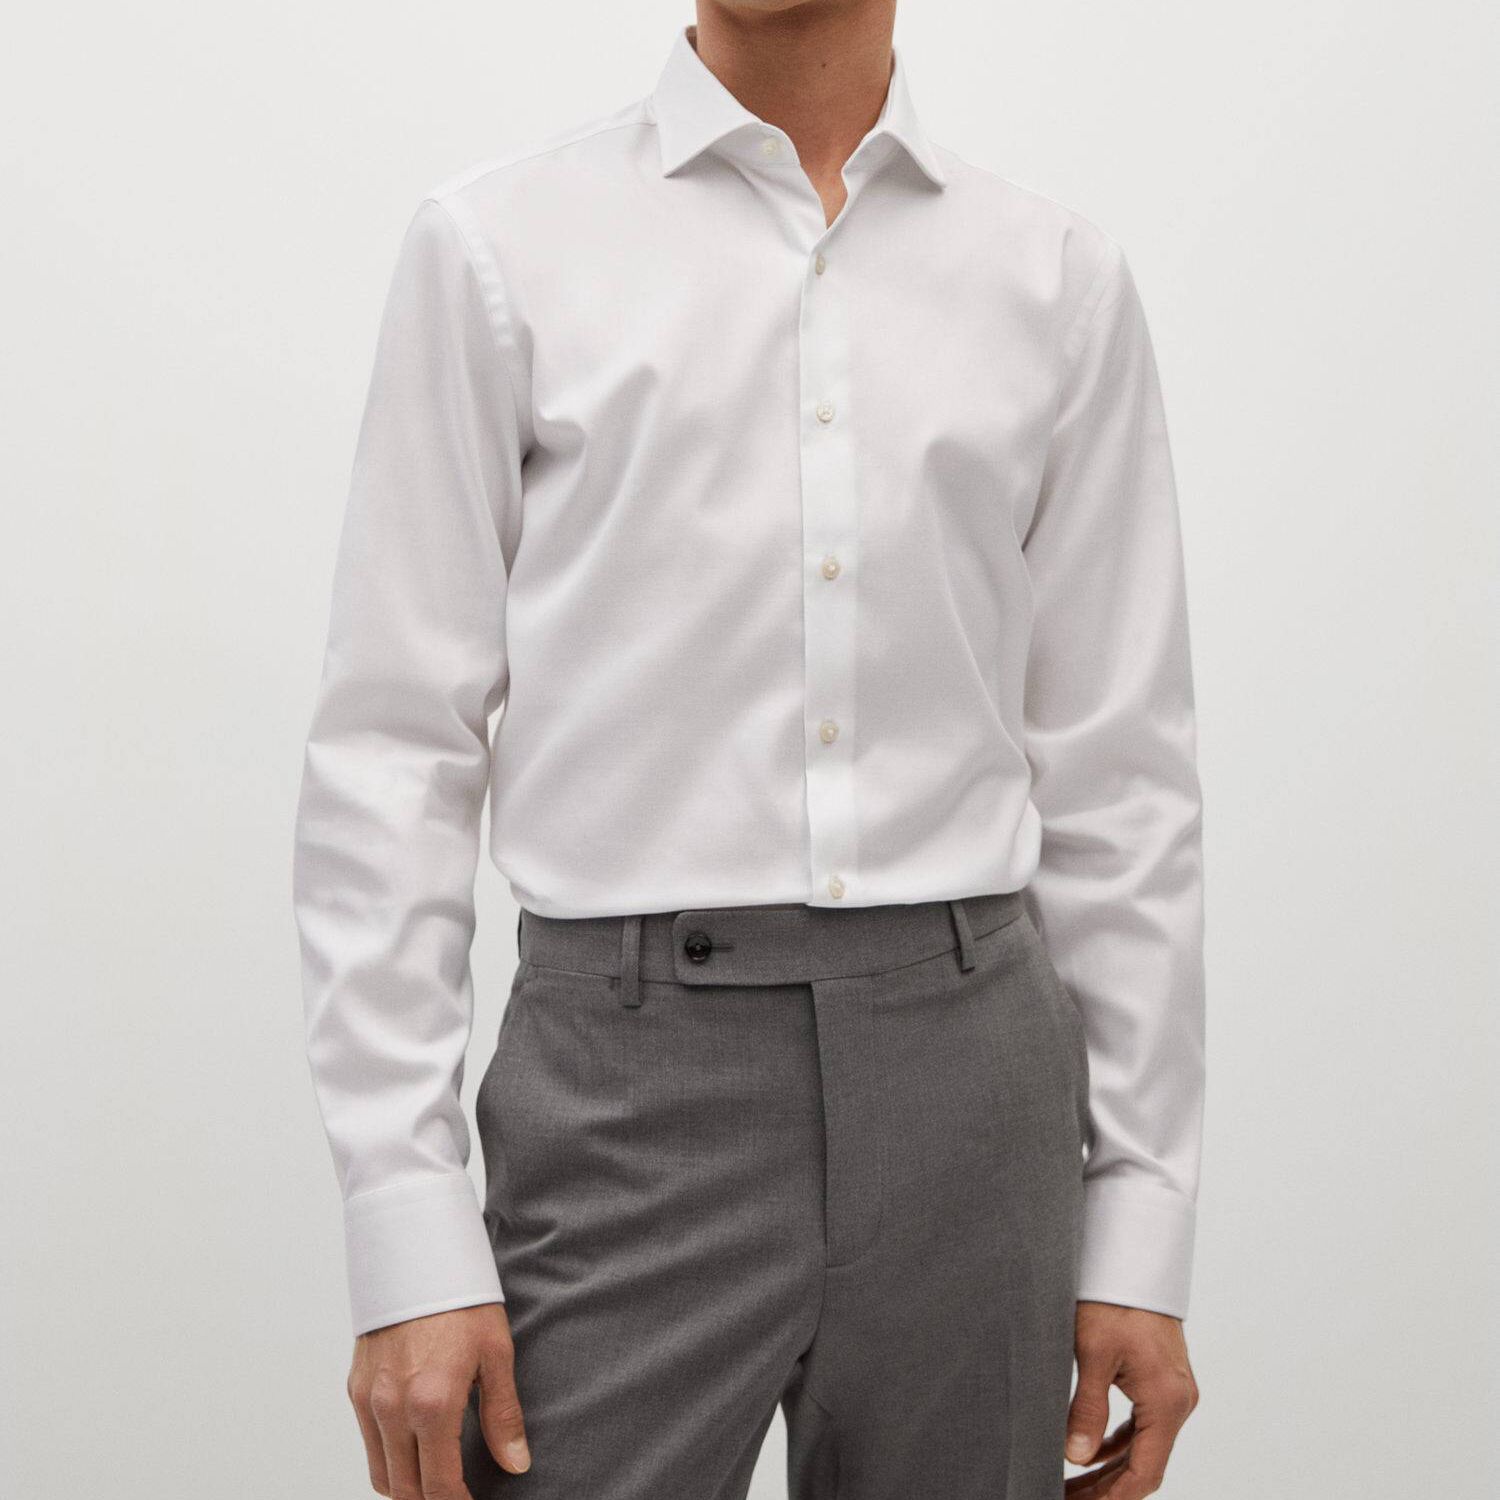 پیراهن آستین بلند مردانه مانگو مدل WT613MAR -  - 2